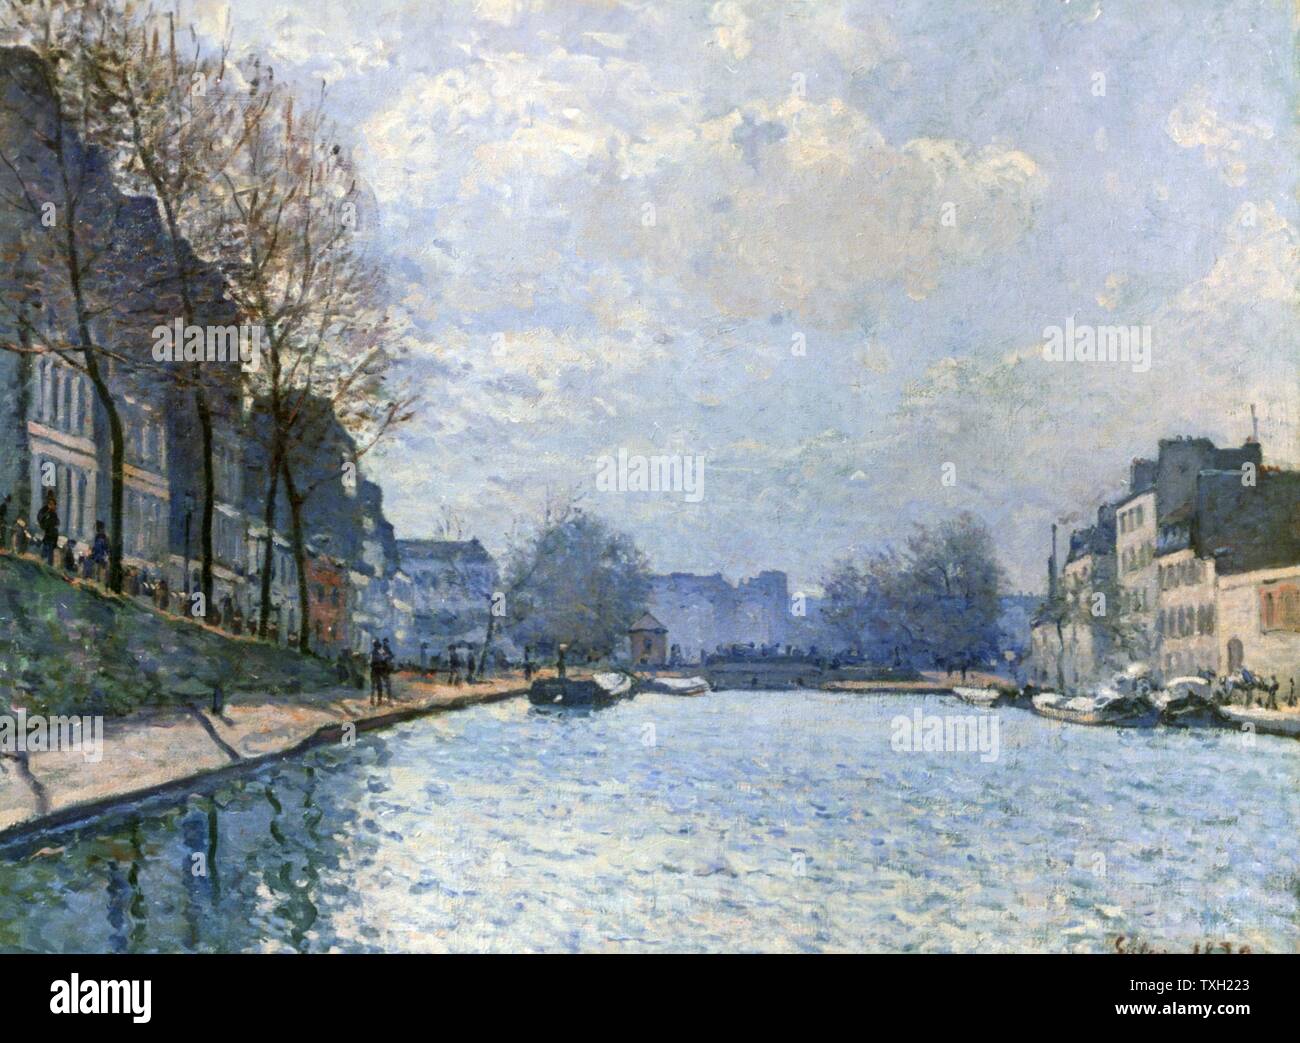 Alfred Sisley English School Vue du canal Saint-Martin 1870 Huile sur toile (50 x 65 cm) Paris, musée d'Orsay Banque D'Images